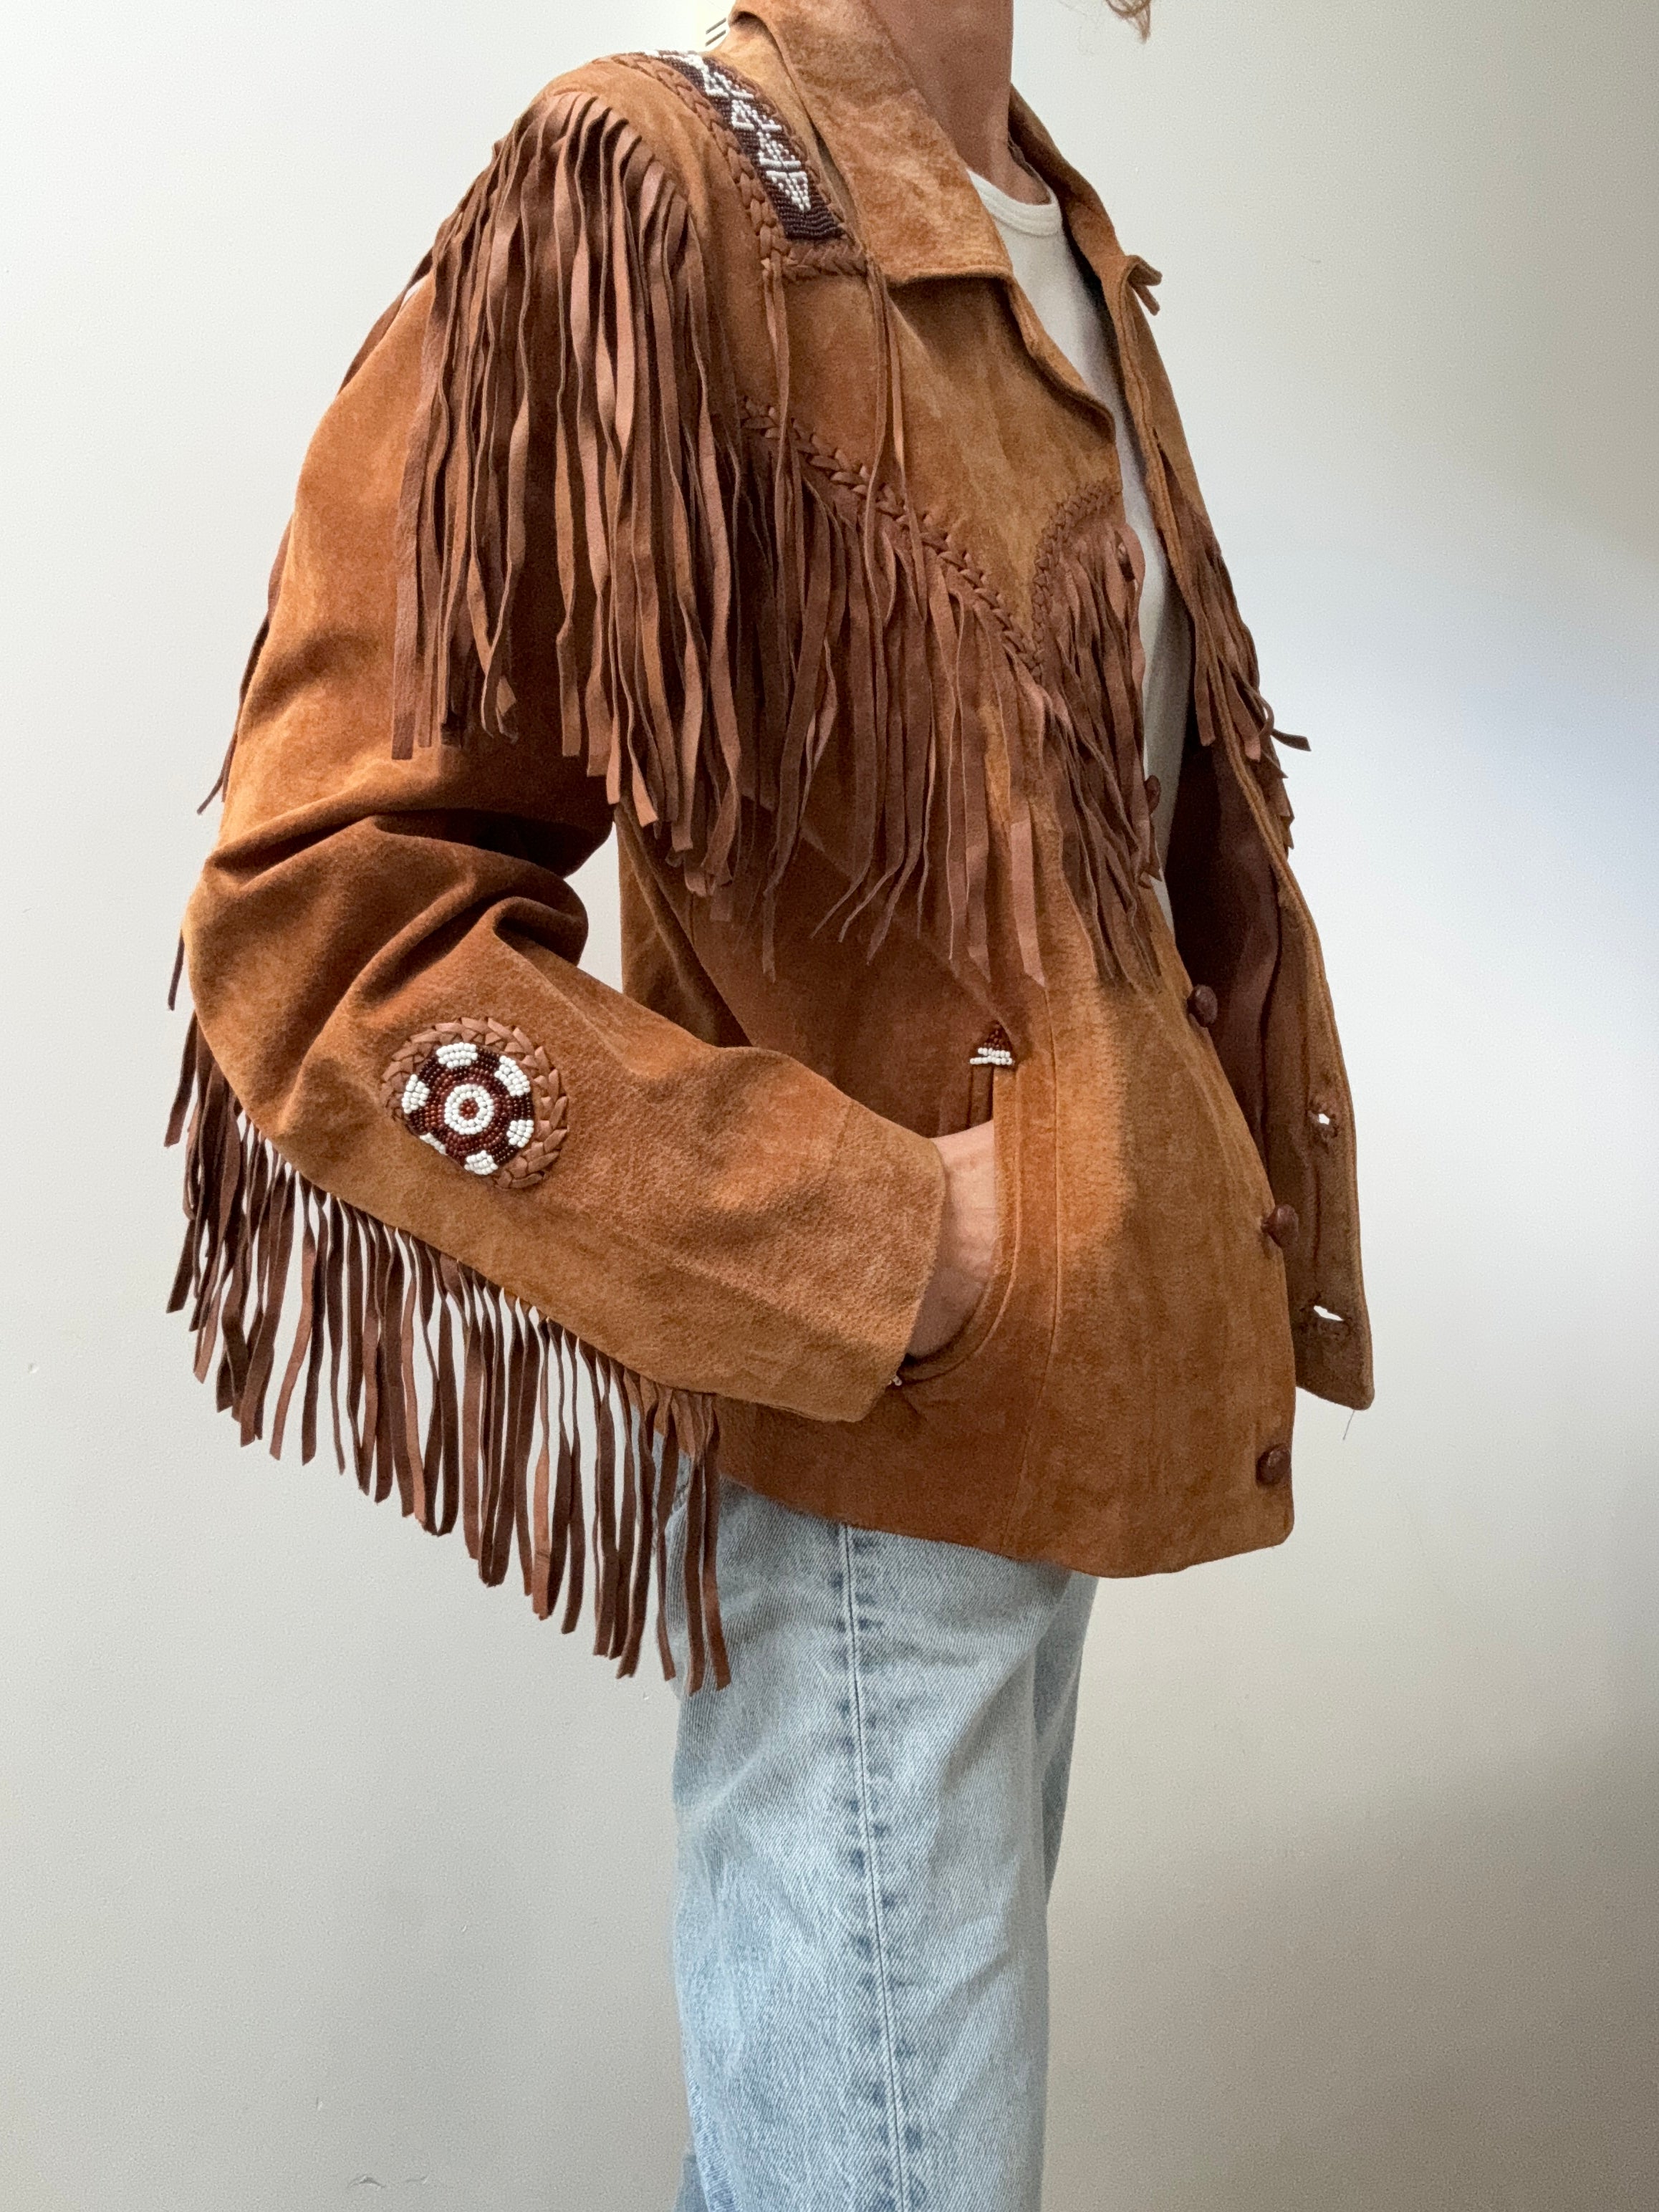 Future Nomads Jackets Medium-Large Echo Mountain Vintage Jacket